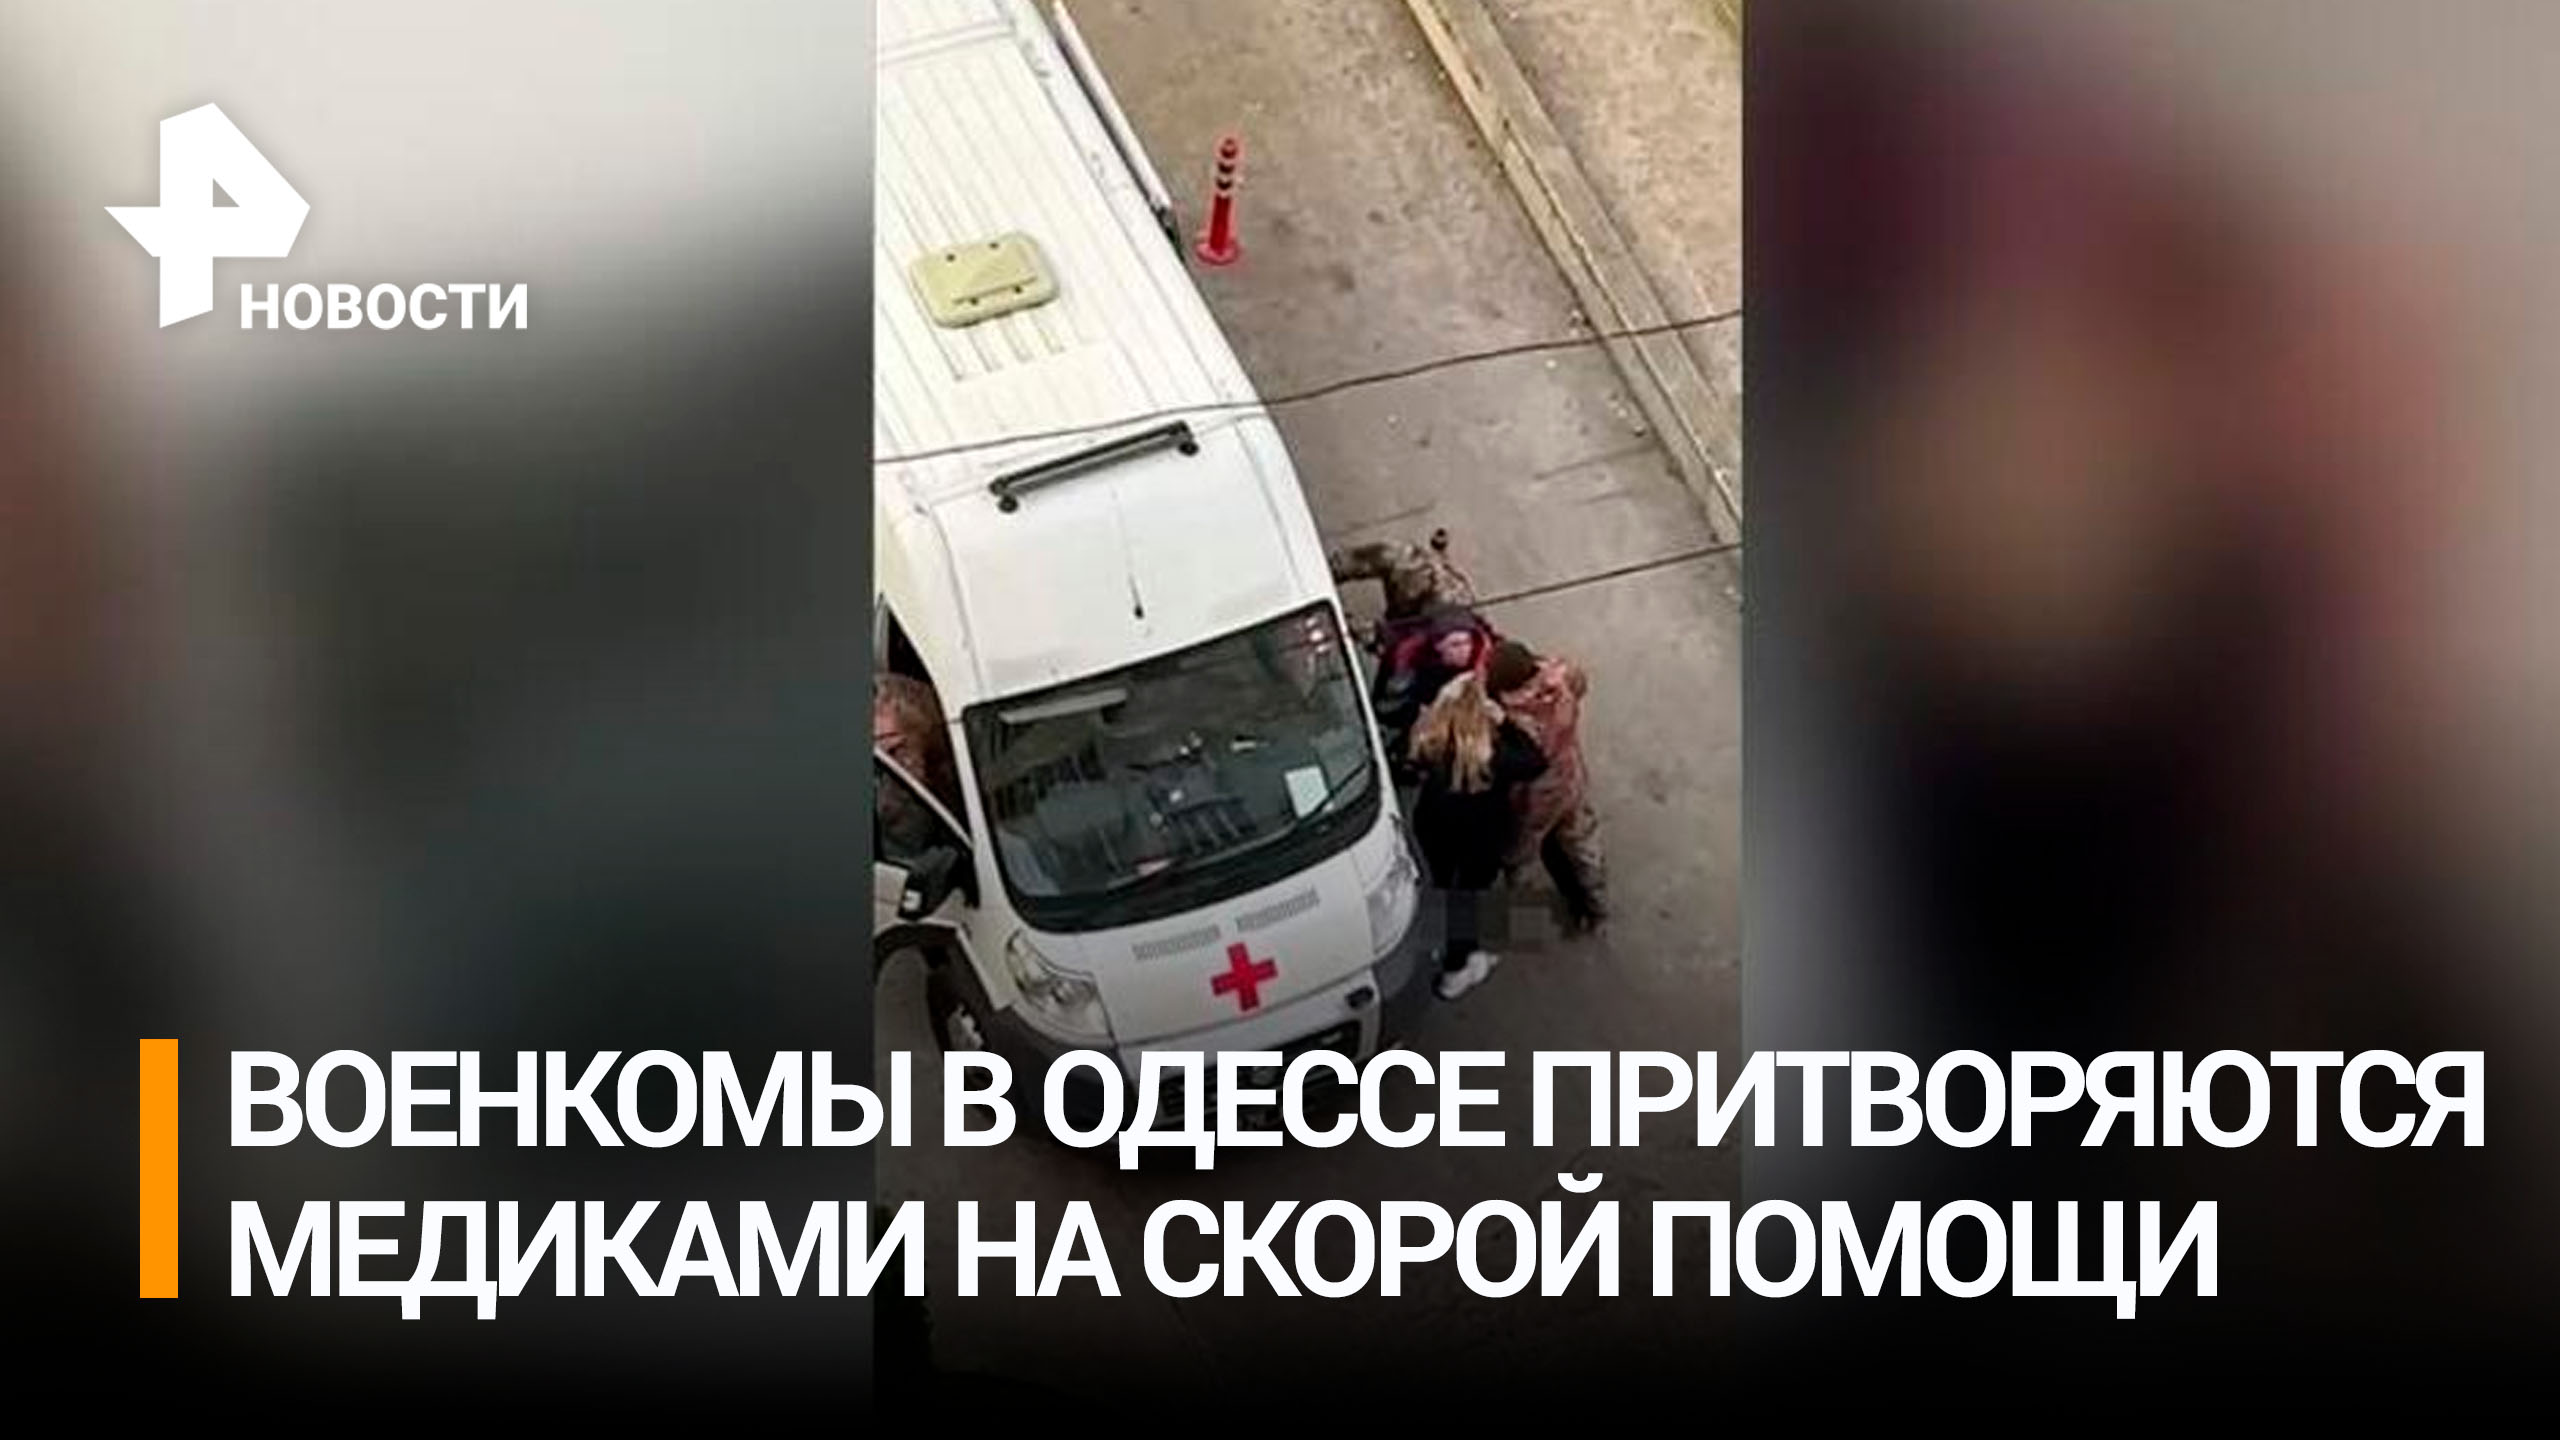 Одесские военкомы начали ловить мужчин из карет скорой помощи / РЕН Новости